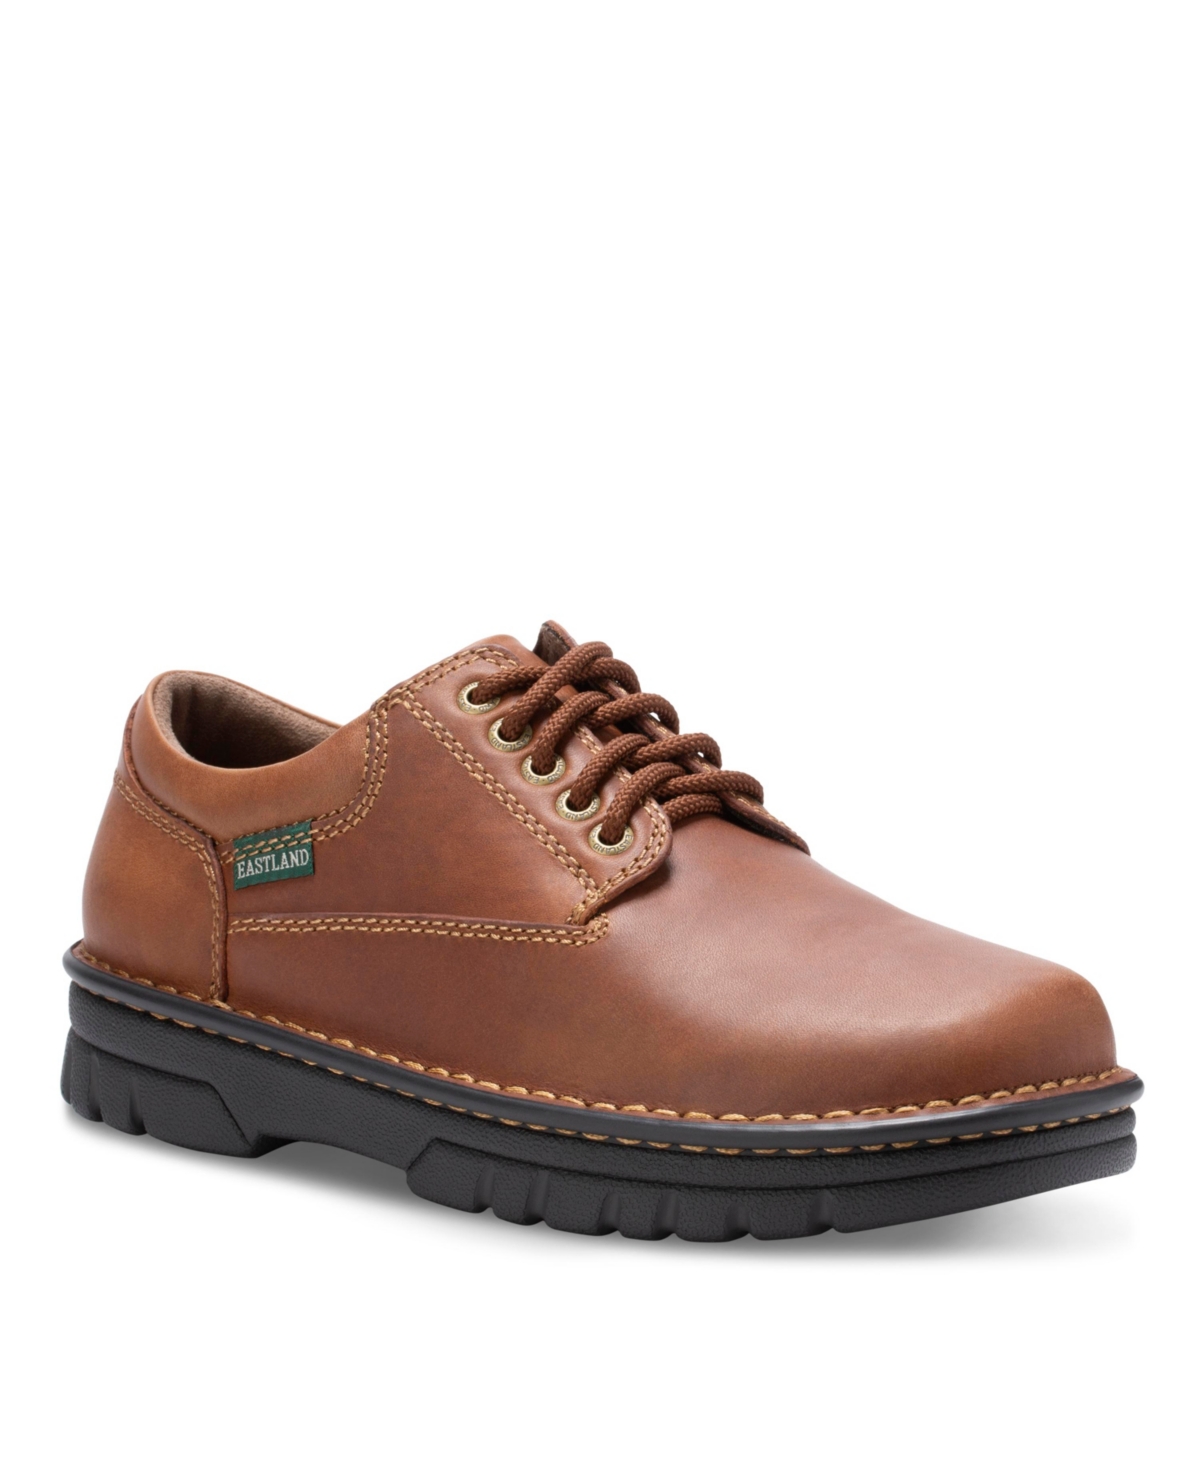 Men's Plainview Oxford Casual Shoes - Oak